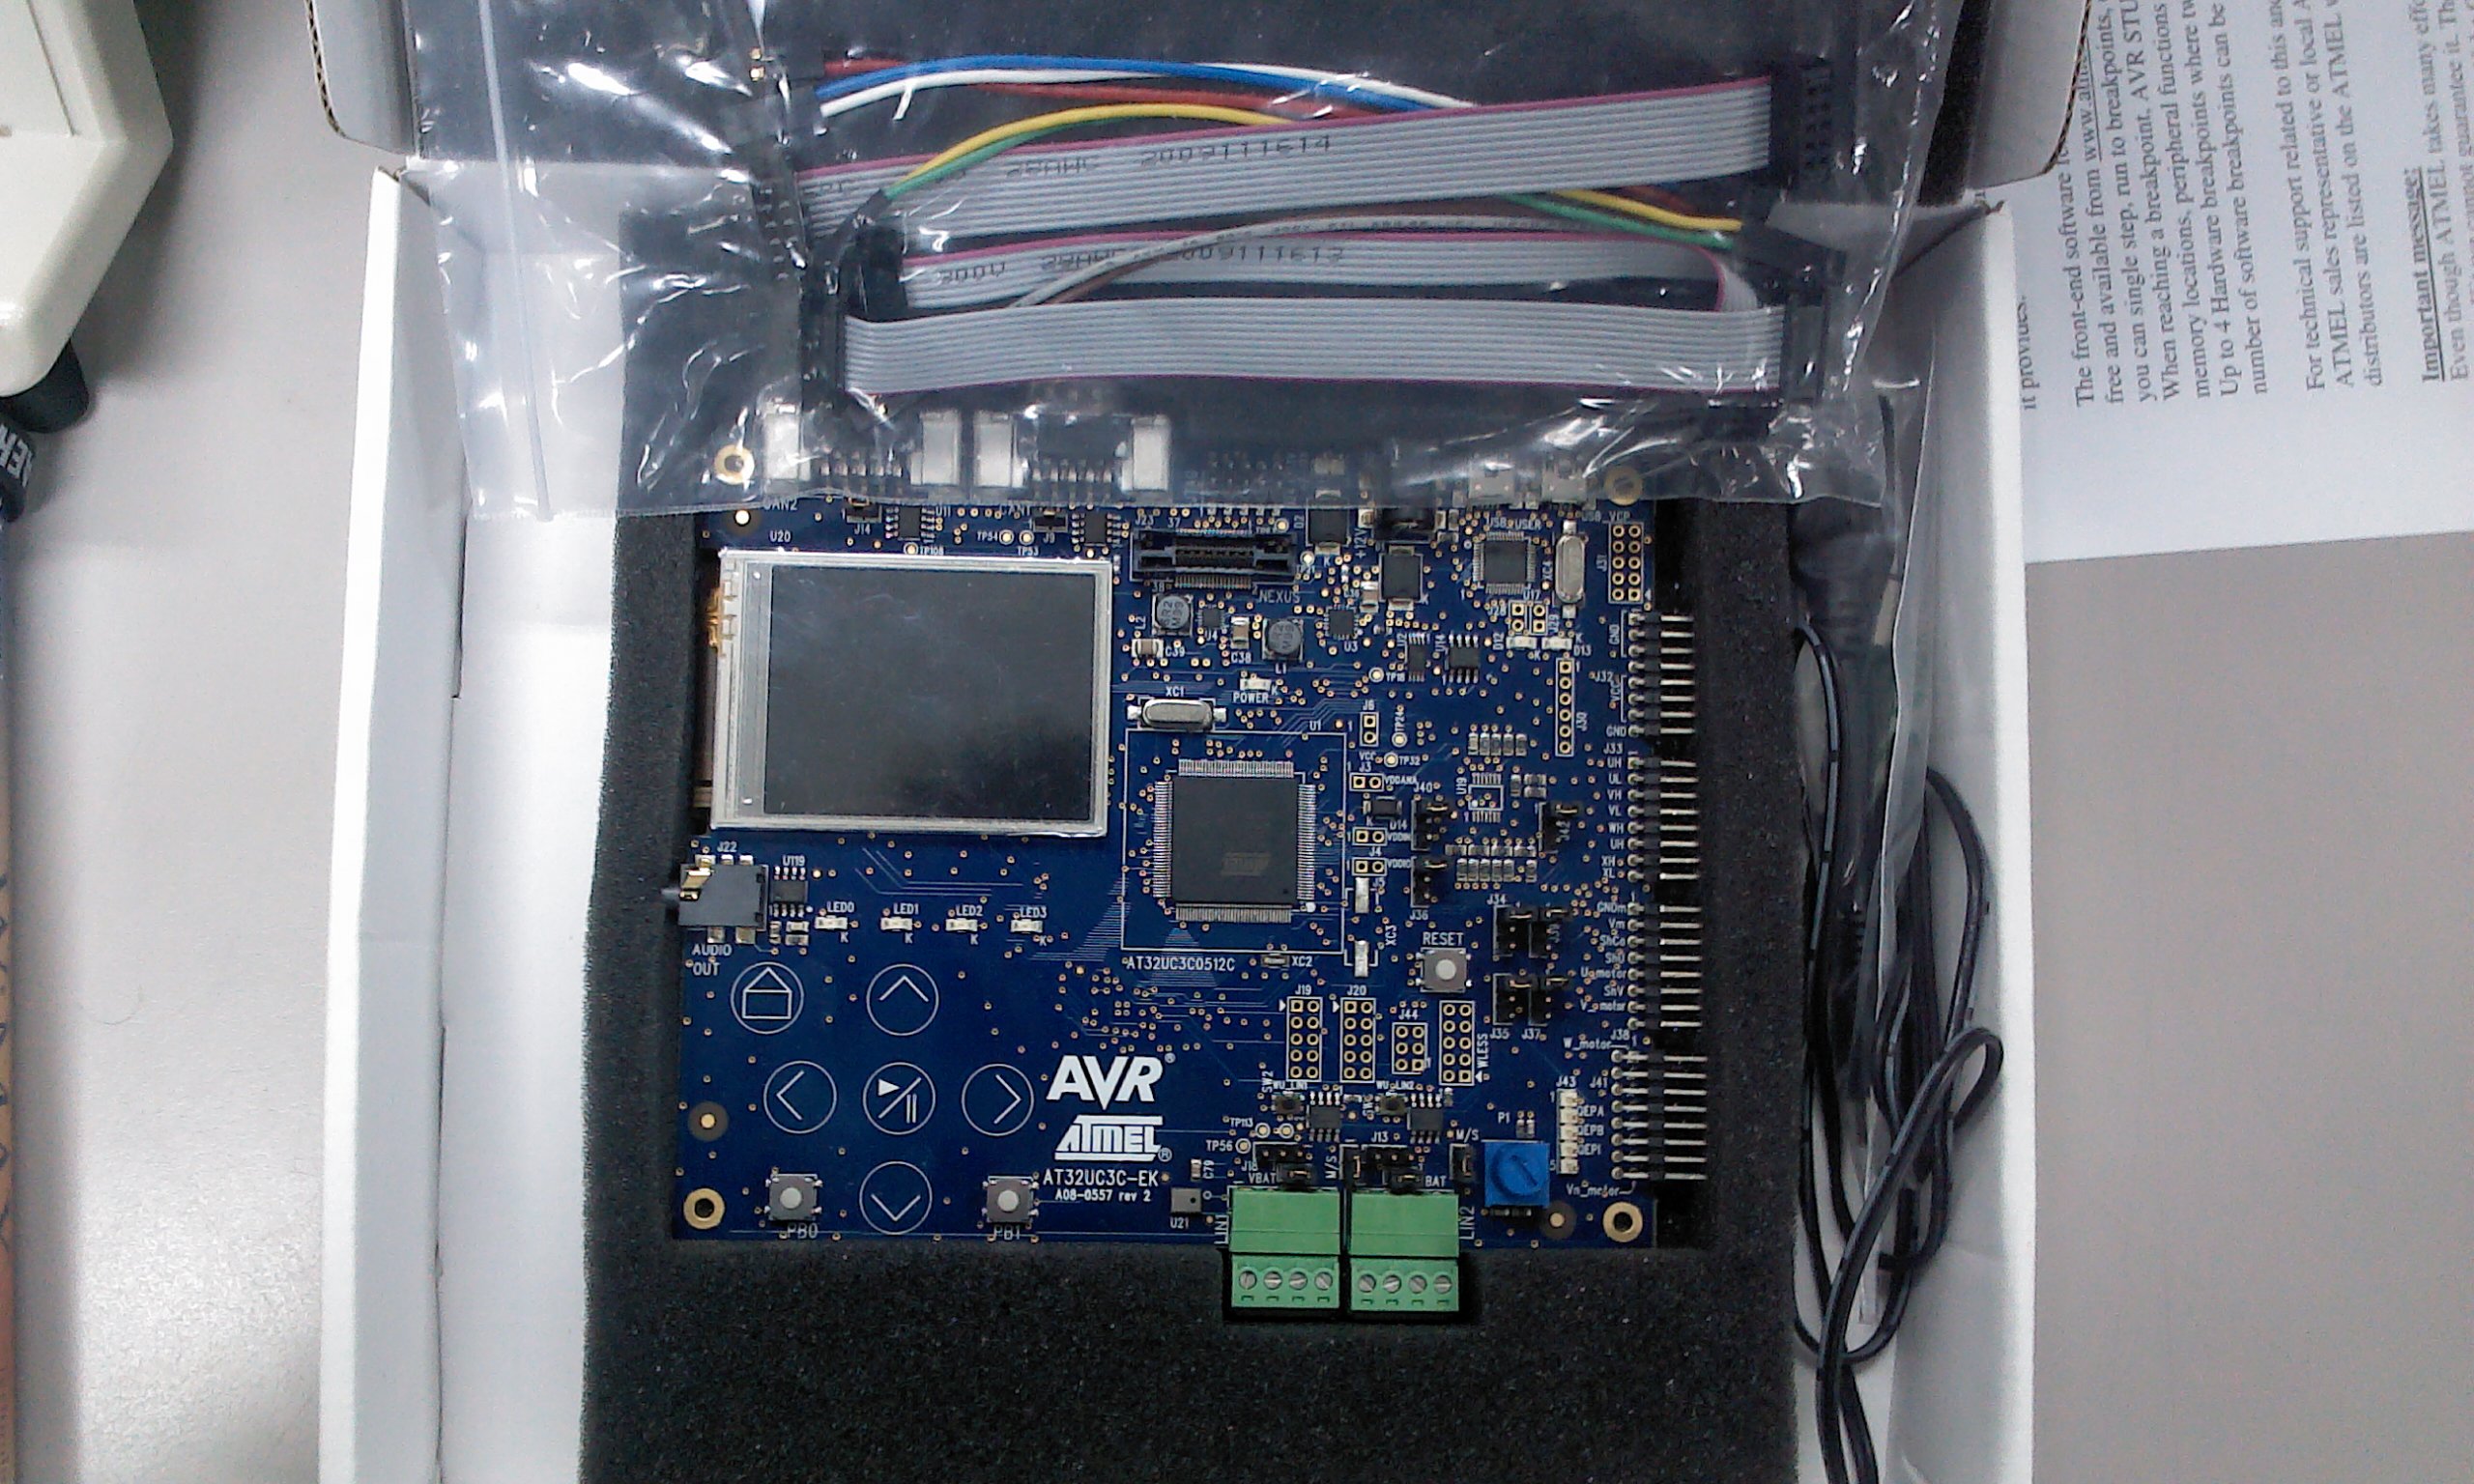 2012-11-16 18.31.54.jpg : AT32UC3C-EK(AVR 32) Eval kit 및 Debugger/Programmer 세트